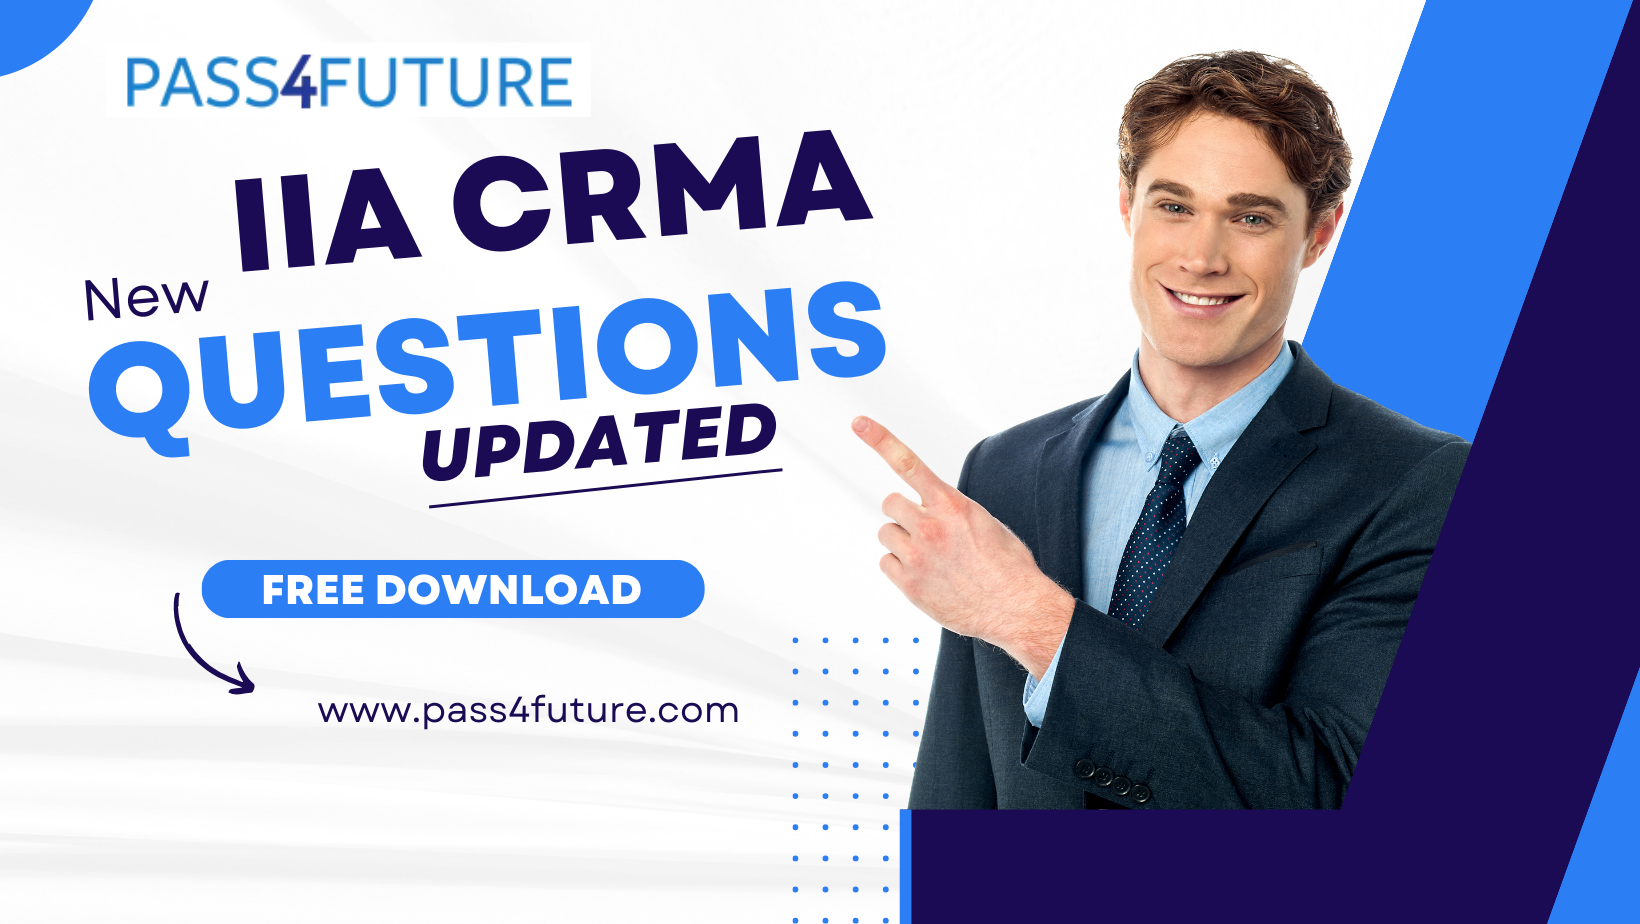 IIA CRMA questions